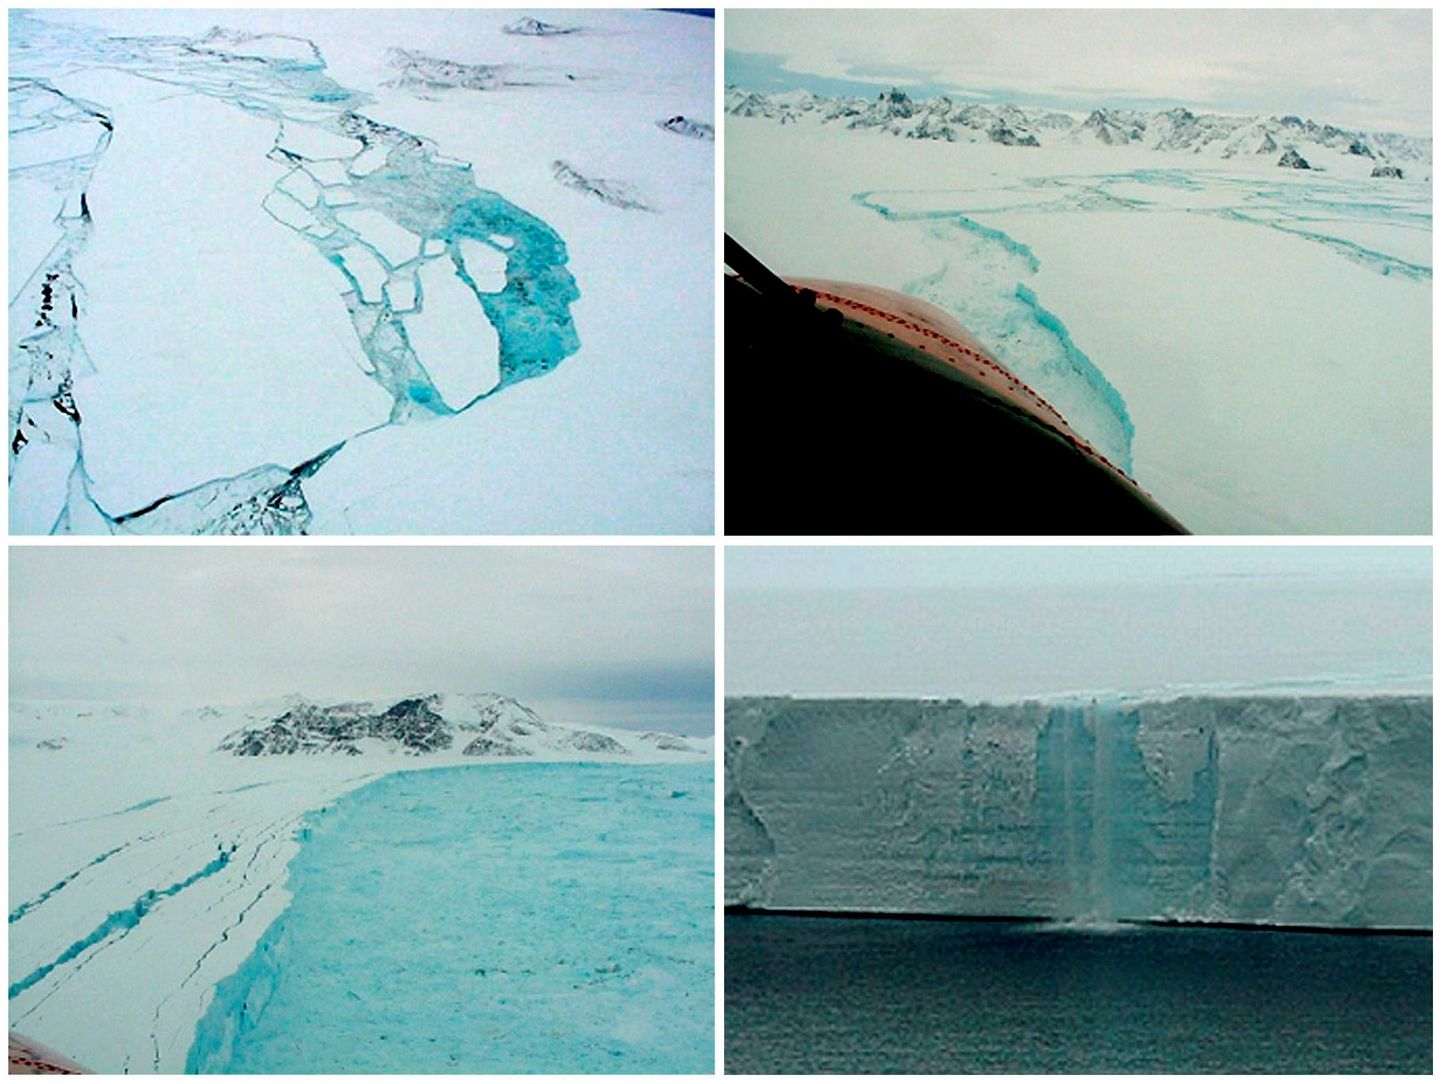 Antraktikas laiuv Larsen C jäälõhe, mille edasise laienemise korral murdub Lõunamandri jääkilbi küljest Saaremaast ligi kolm korda suurem šelfijää tükk.